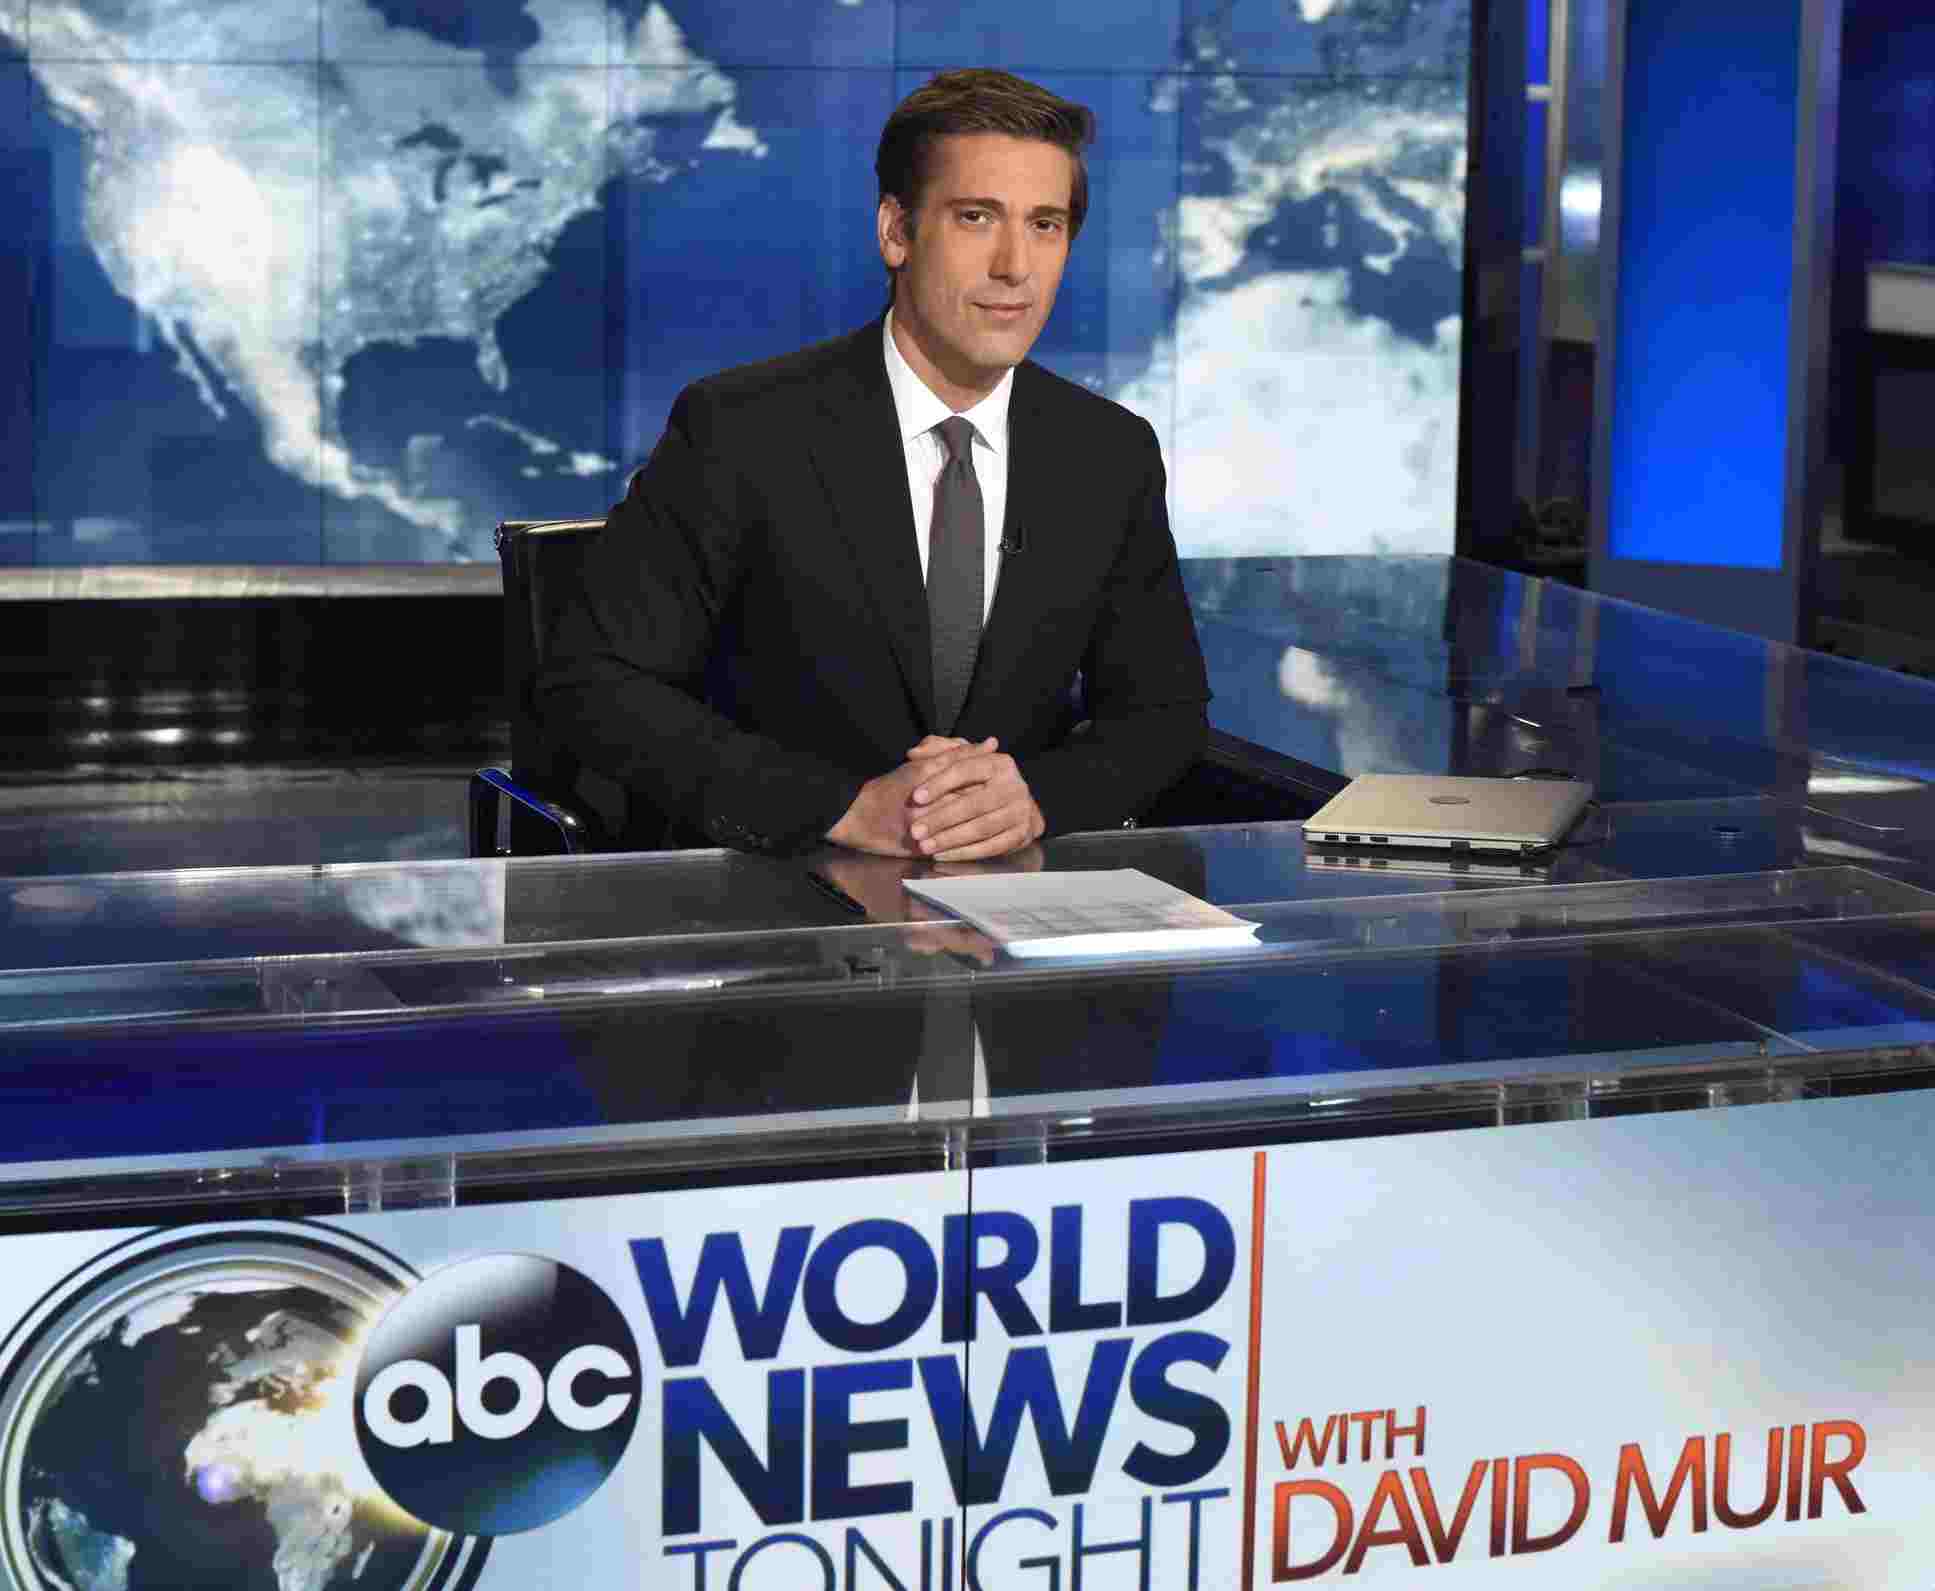 Image of David Muir as an ABC news anchor